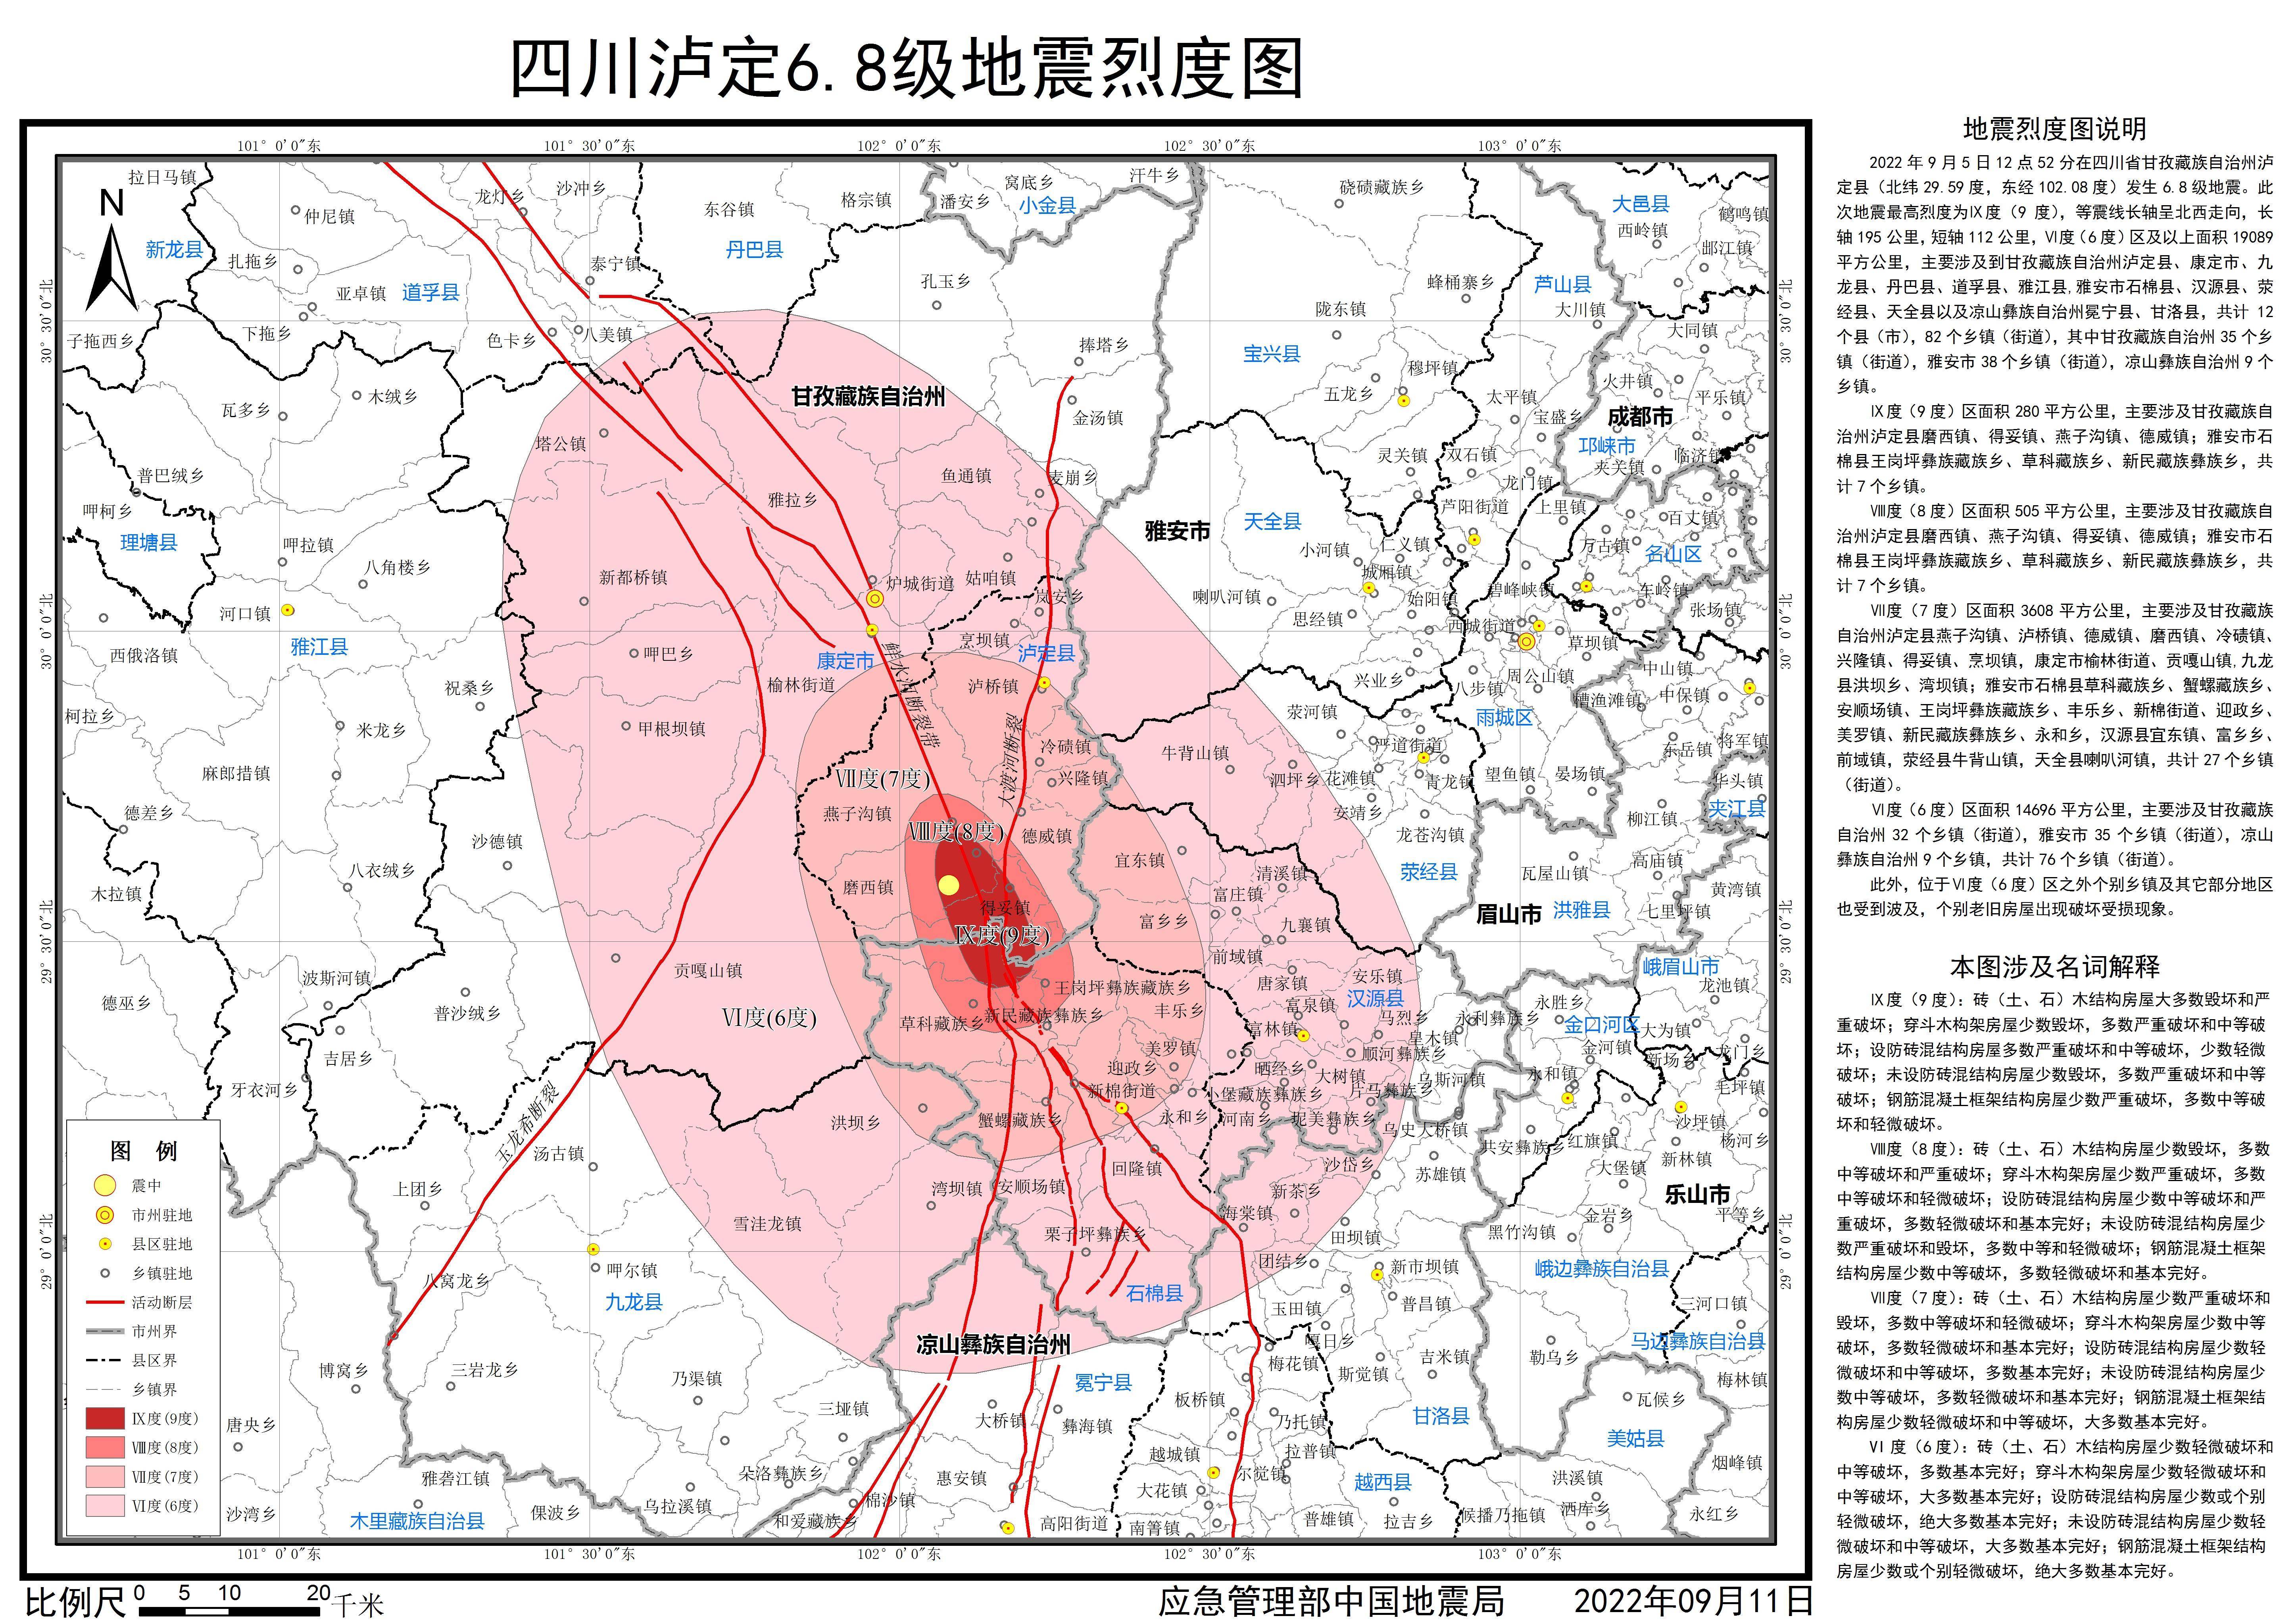 最高烈度9度！应急管理部发布四川泸定6.8级地震烈度图 